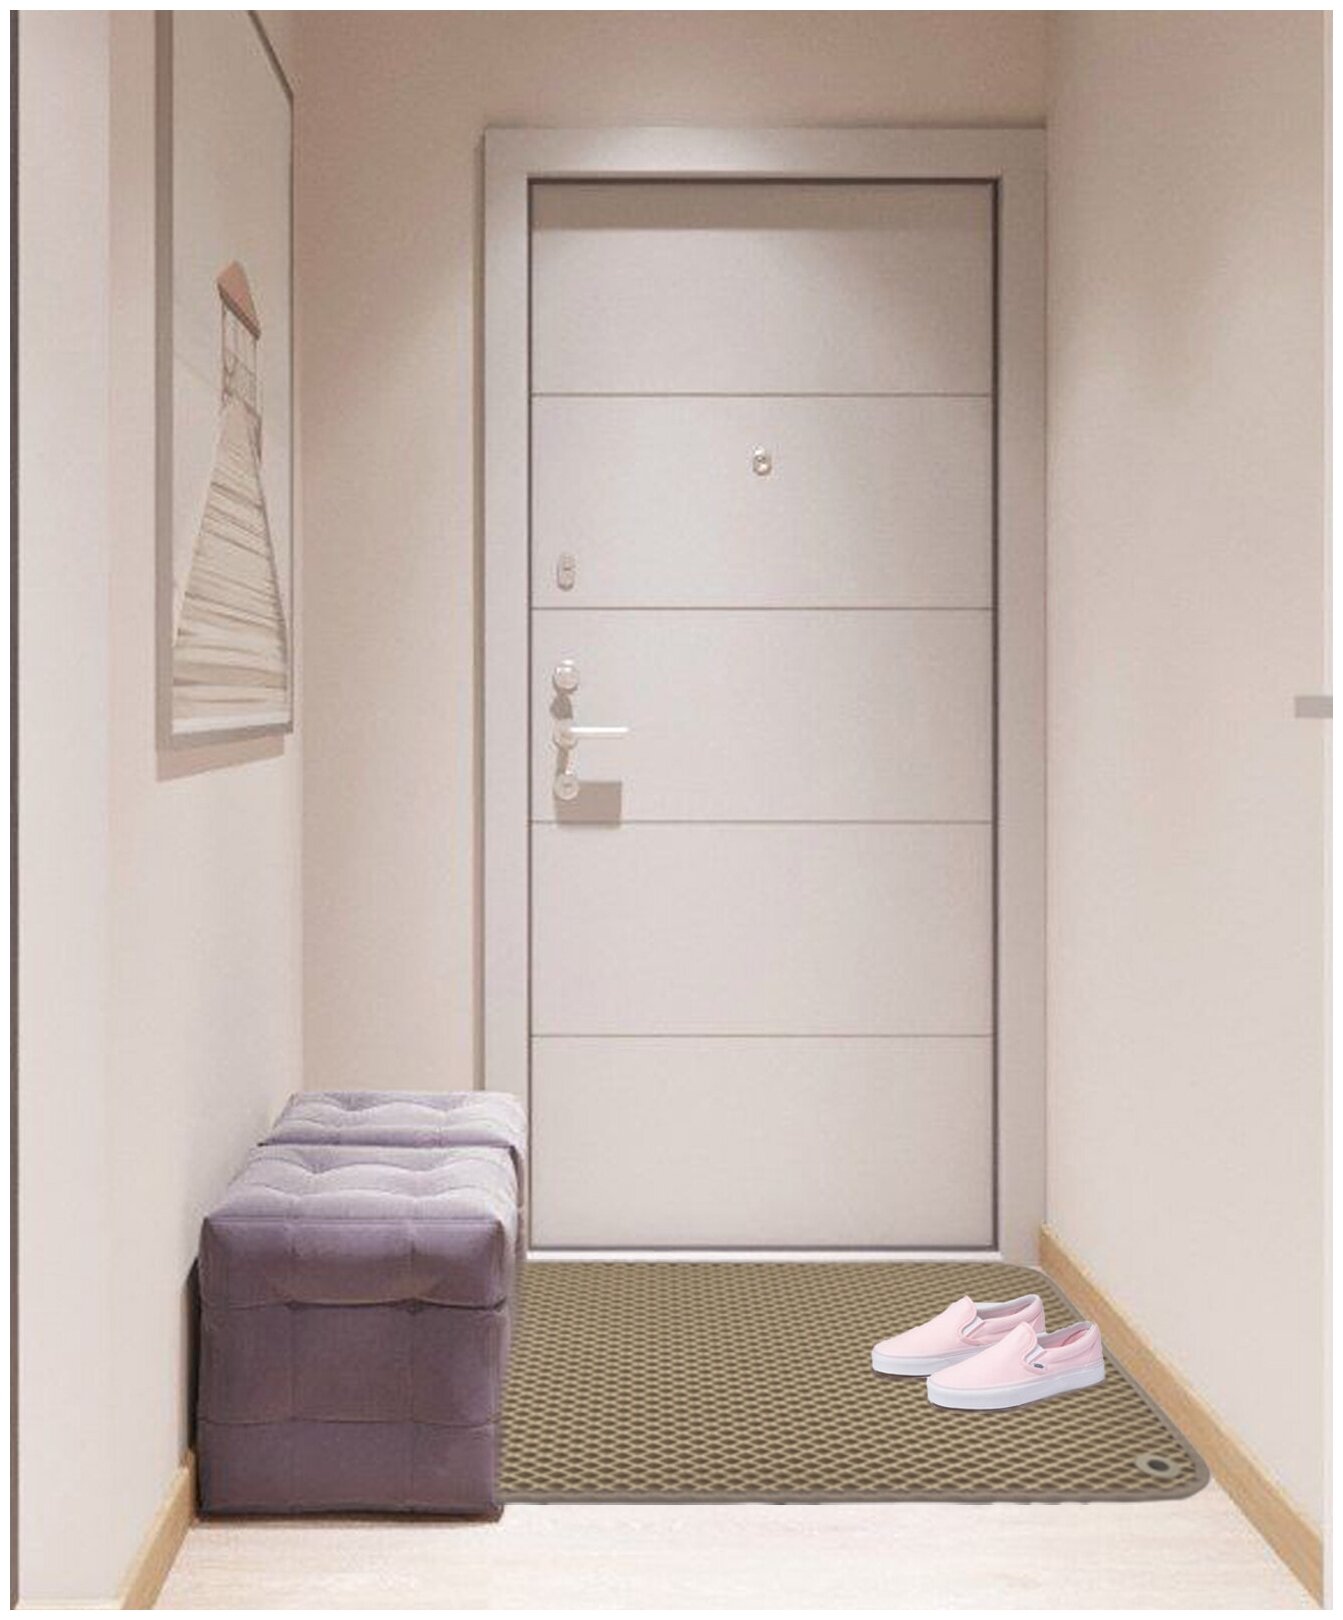 Грязезащитный придверный резиновый коврик в прихожую из EVA для обуви, для ванной, туалета, 0.3 х 0.45 м, бежевый ромб - фотография № 2